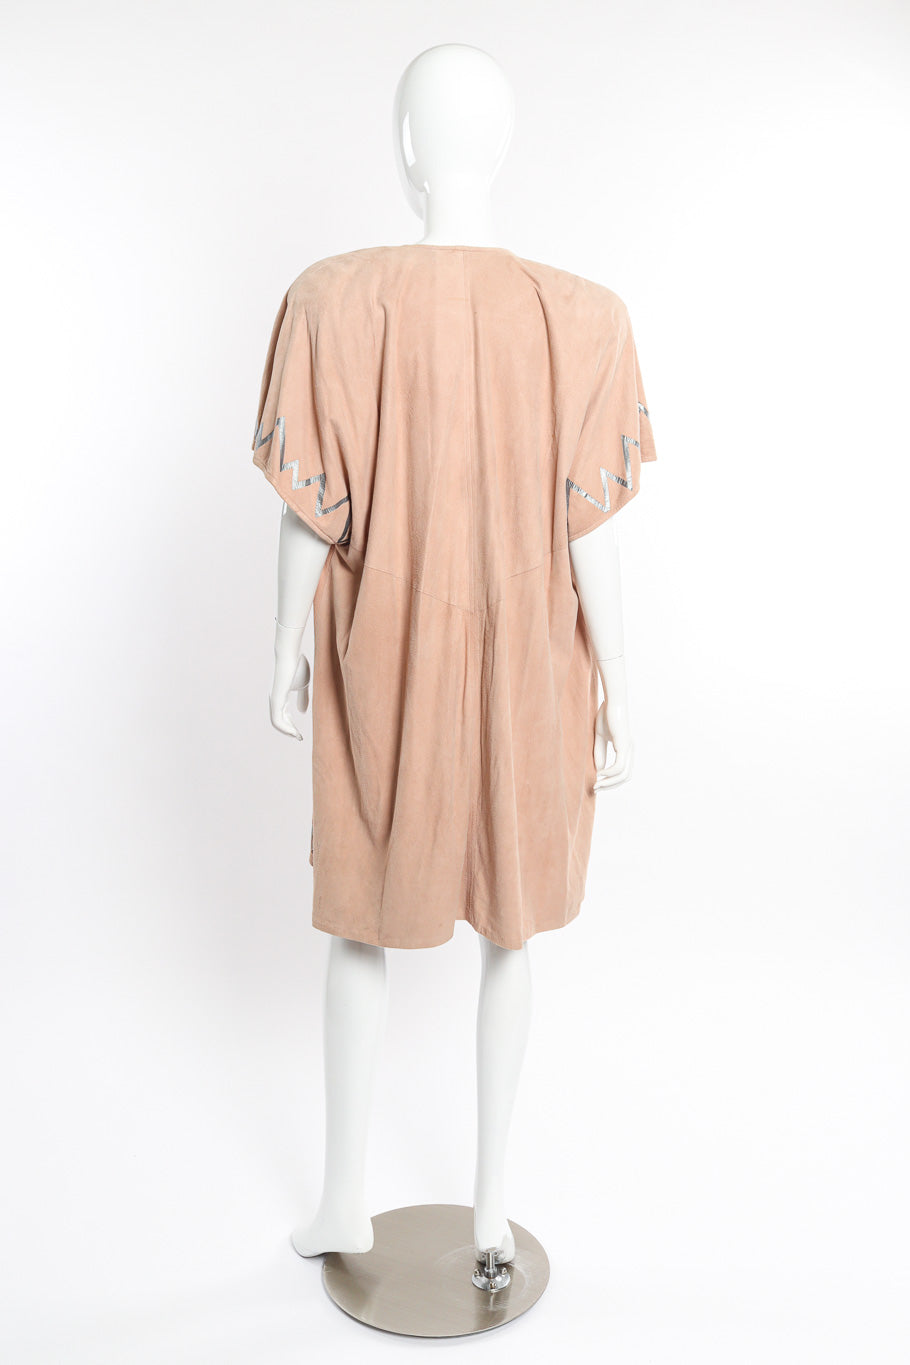 Suede Tank & Vest Set by Lillie Rubin on mannequin back @recessla